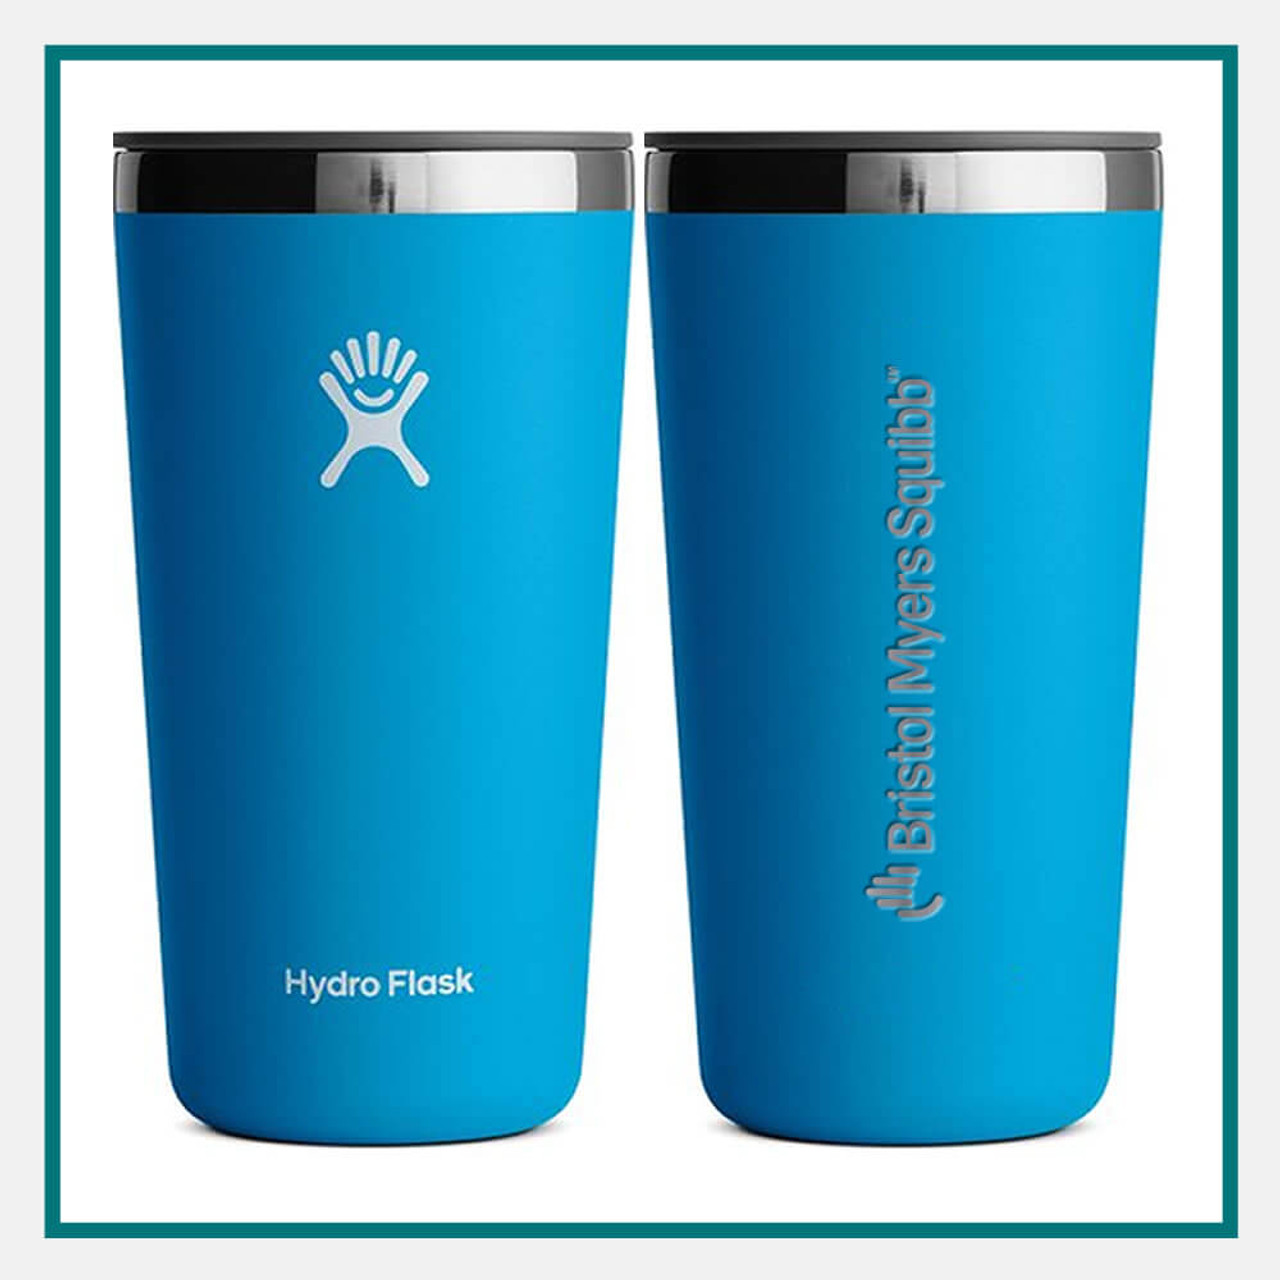 Hydro Flask 16 oz All Around Tumbler - Indigo